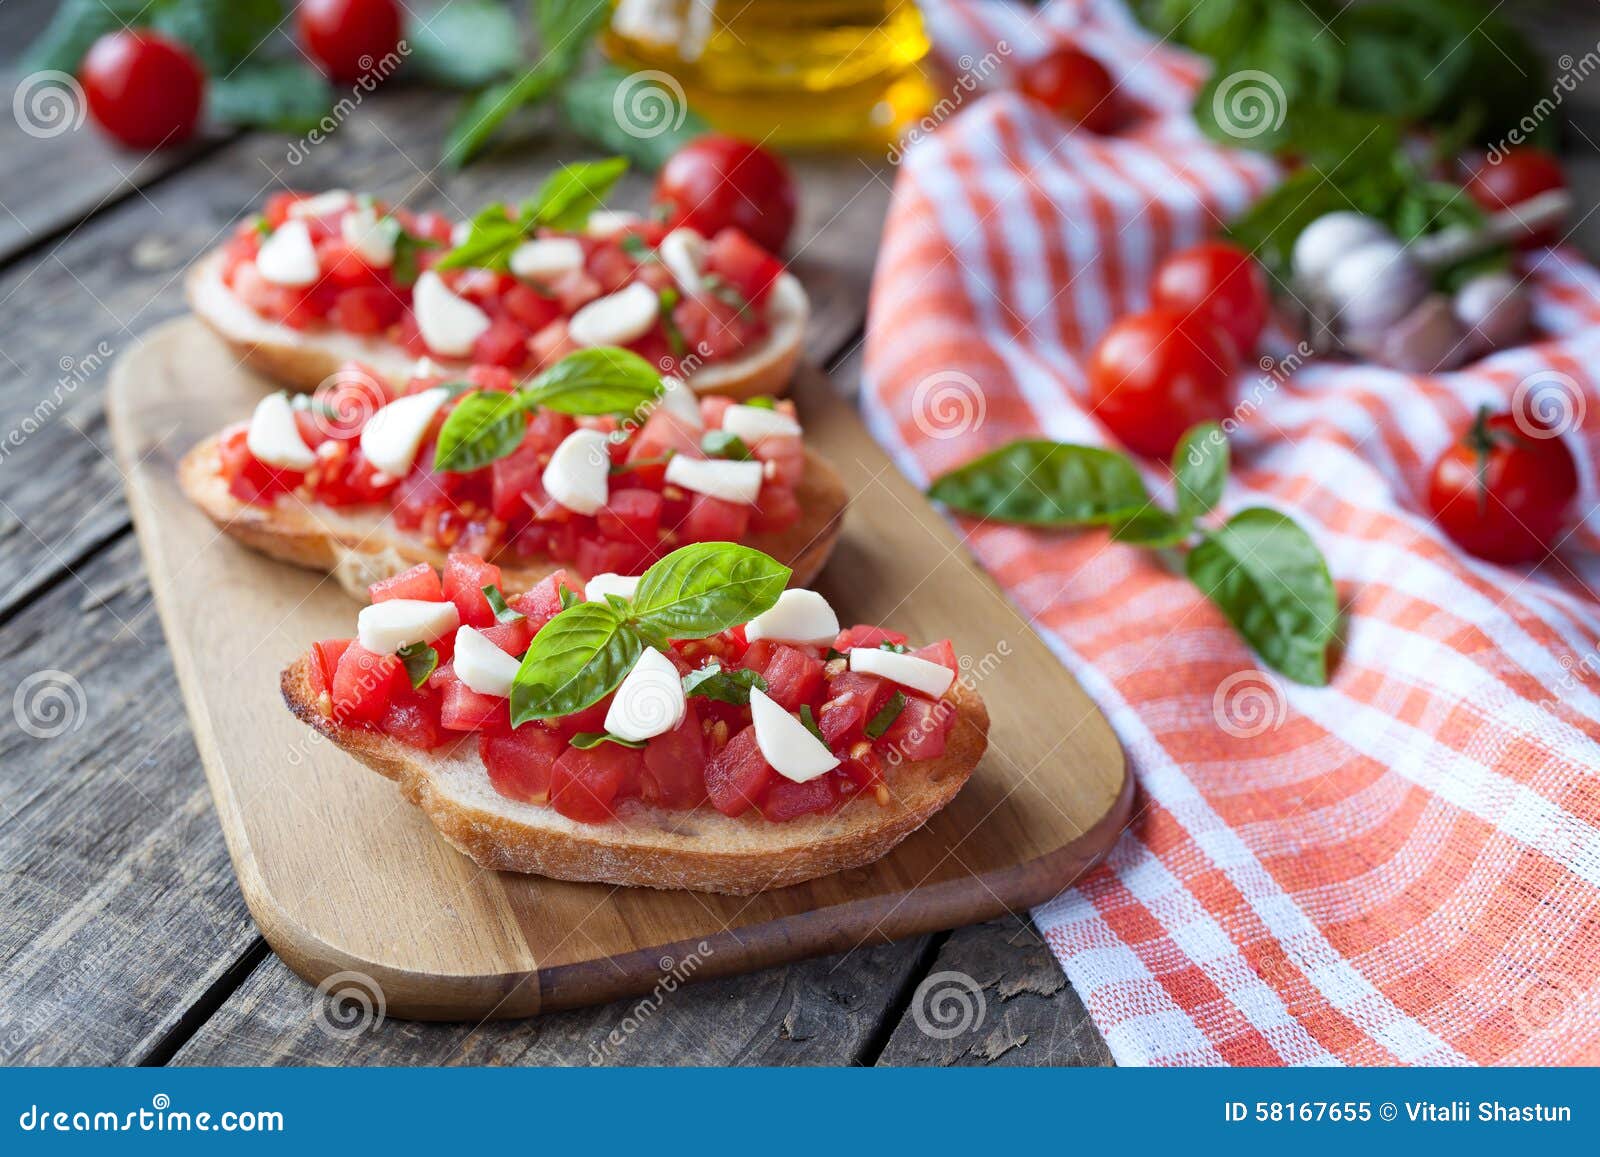 Antipasti italianos tradicionais caseiros do bruschetta com baguette, os tomates, manjericão e a mussarela roasted no fundo de madeira do vintage Estilo rústico e luz natural